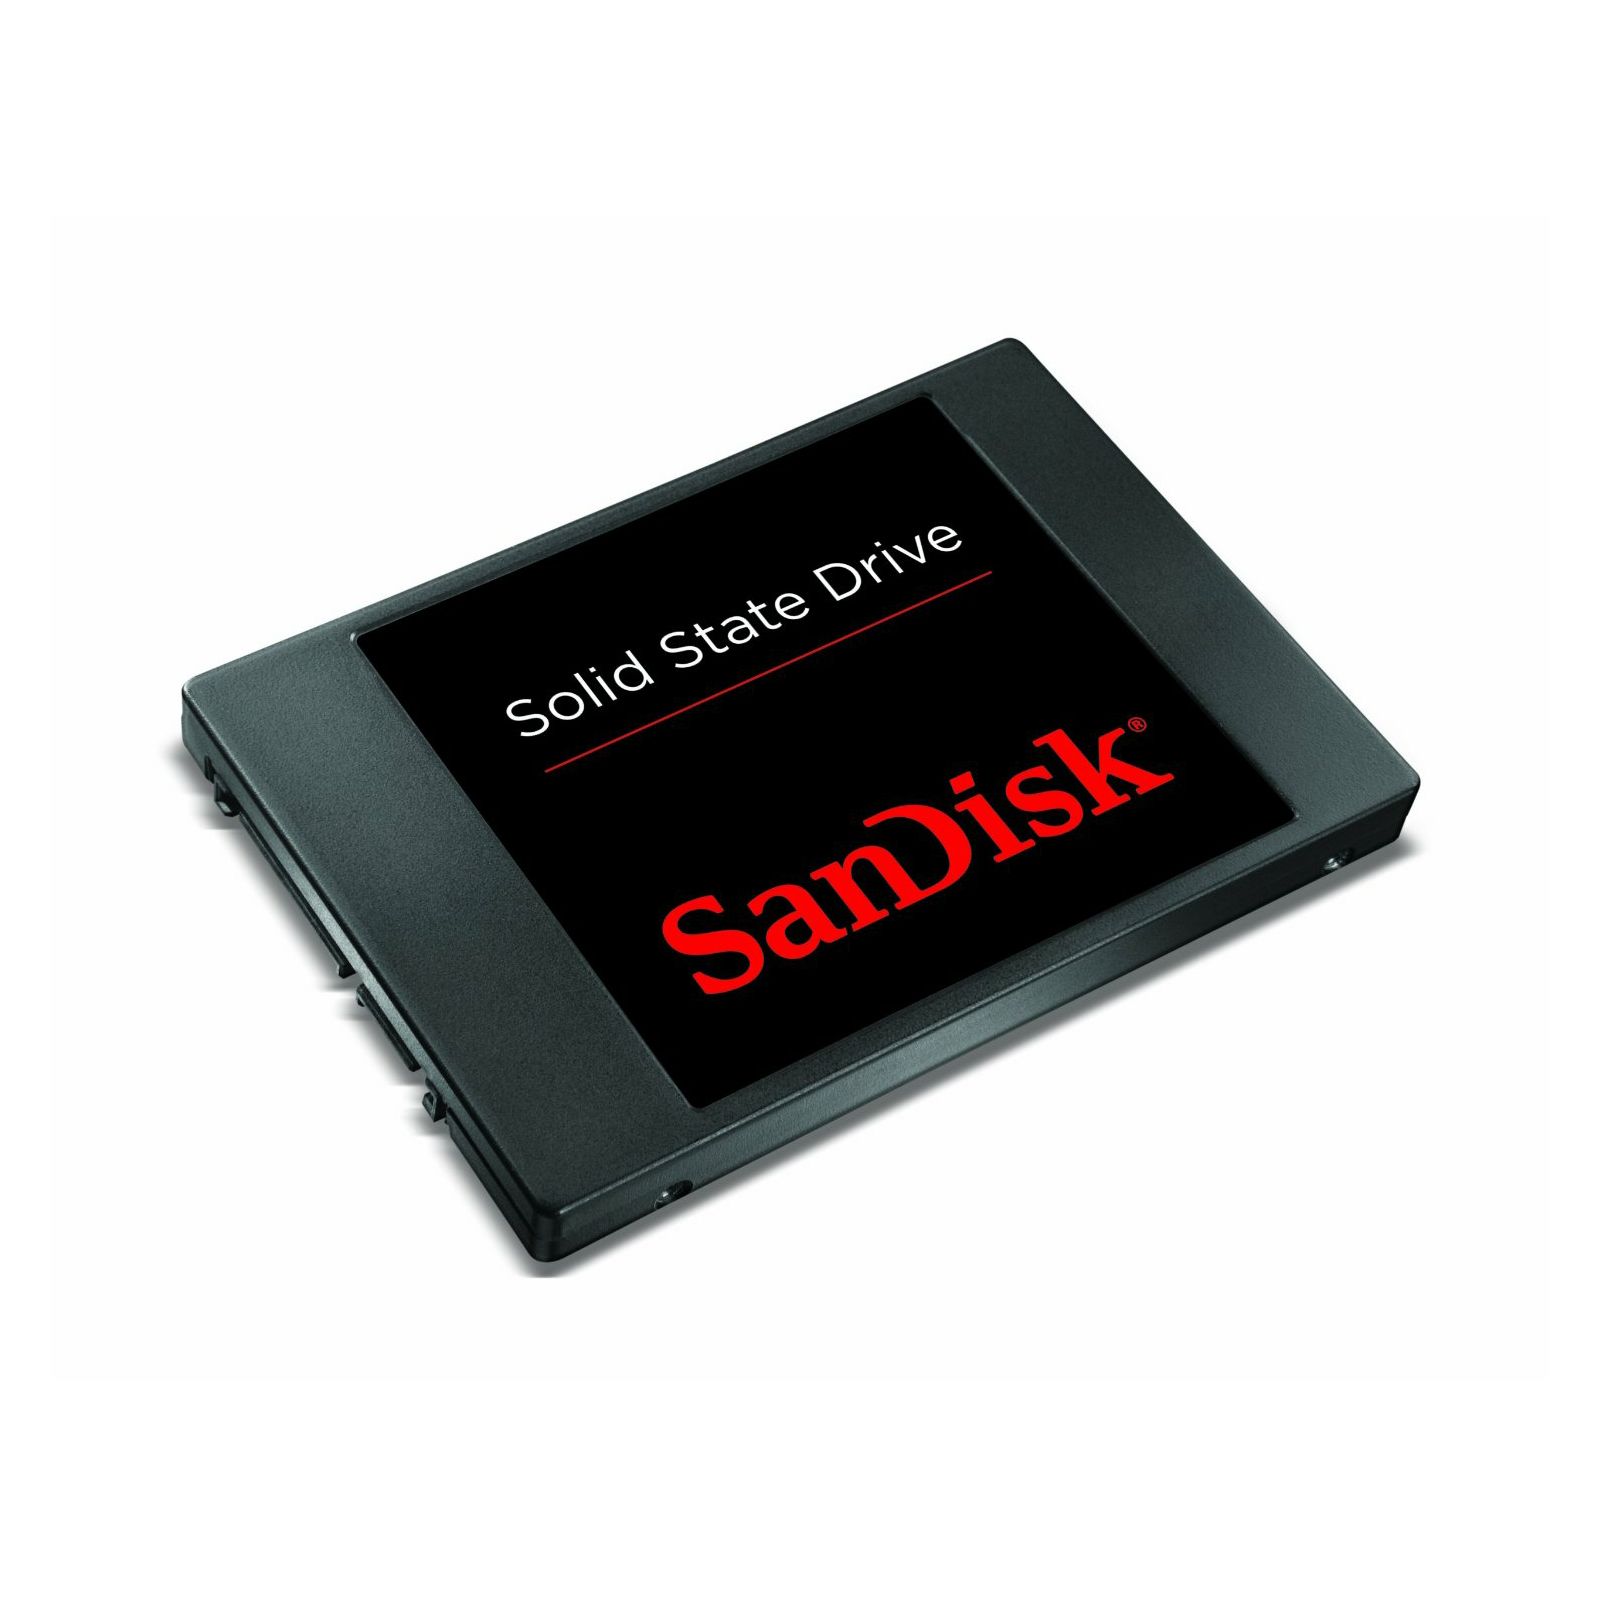 SanDisk SSD Pulse 64GB SDSSDP-064G-G25 Solid State Drive Disk